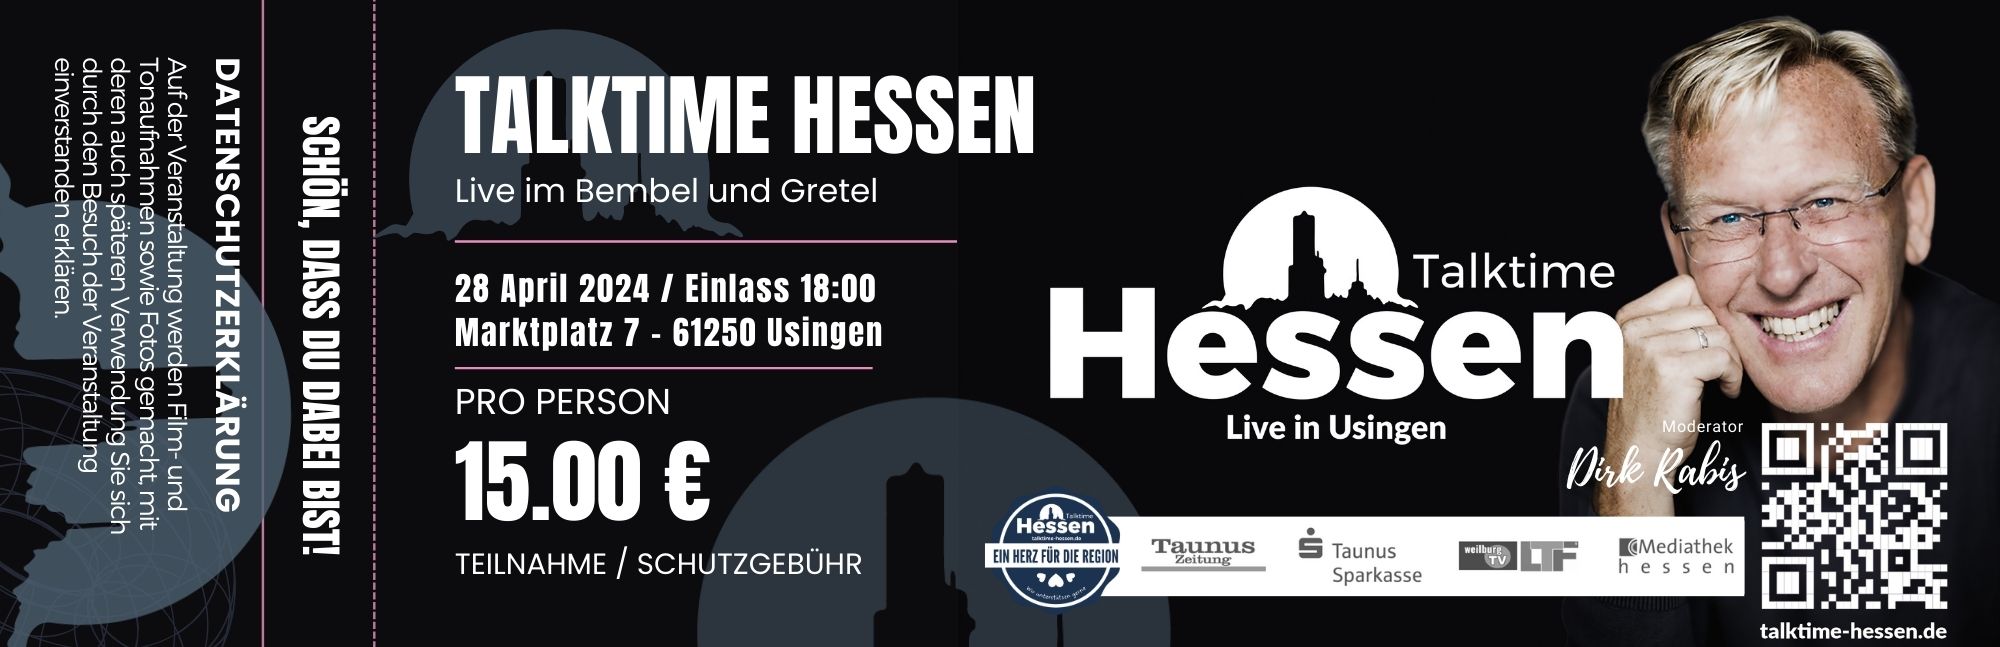 Talktime Hessen Ticket Buchung zur Talkshow am 20-10-23 im Bembel und Gretel Ankuendigung-04-09-23